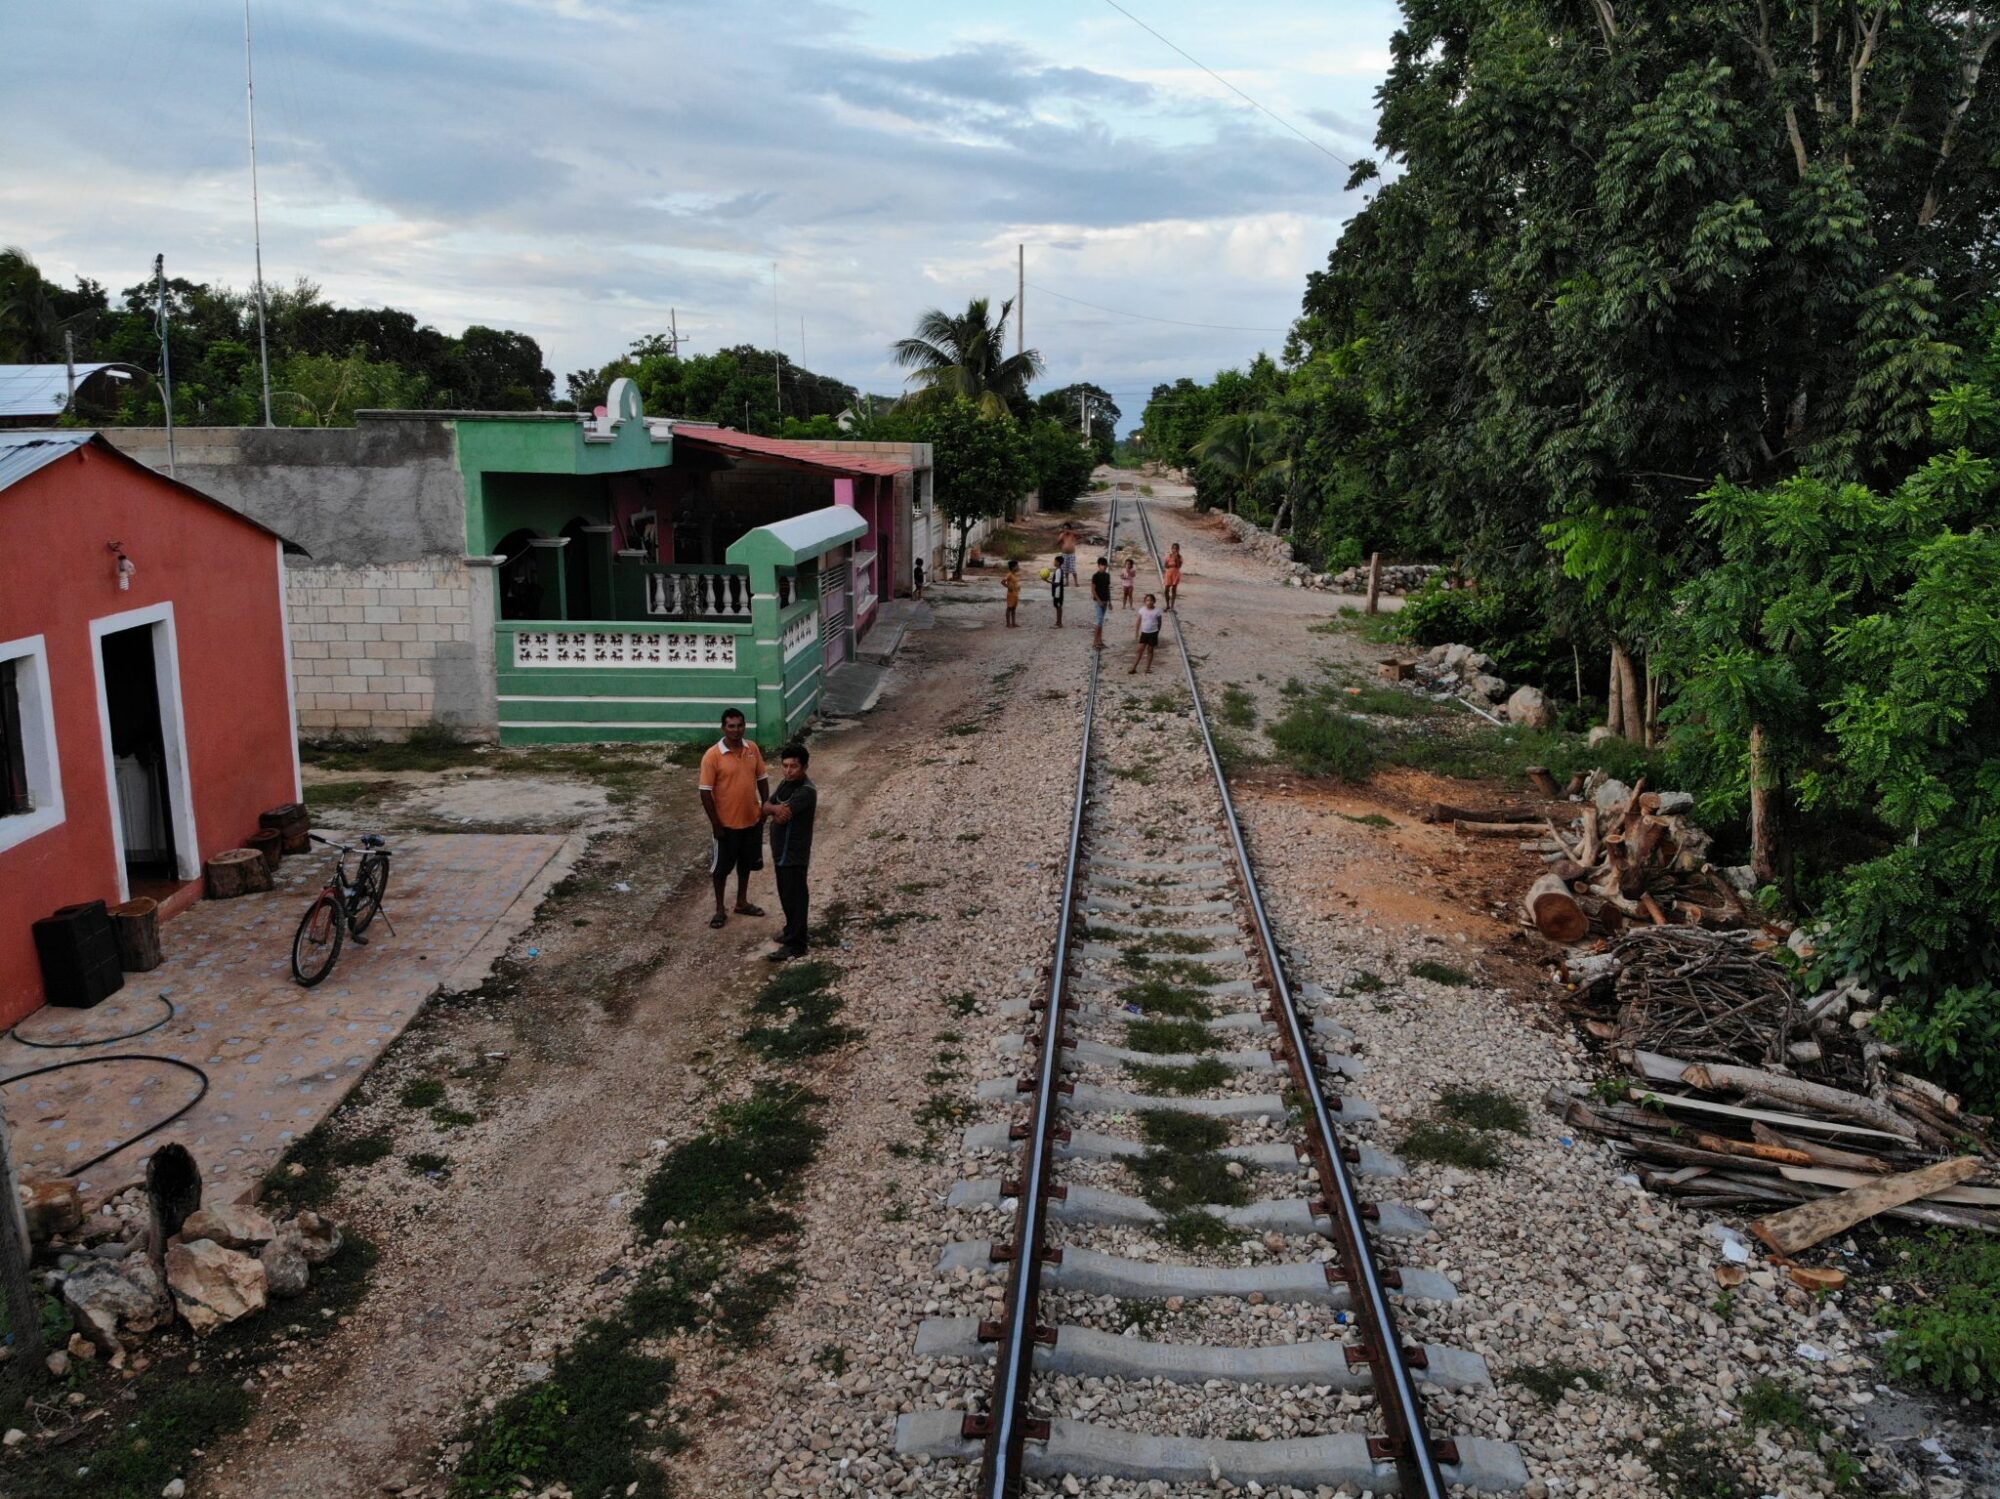 Mayan train tracks